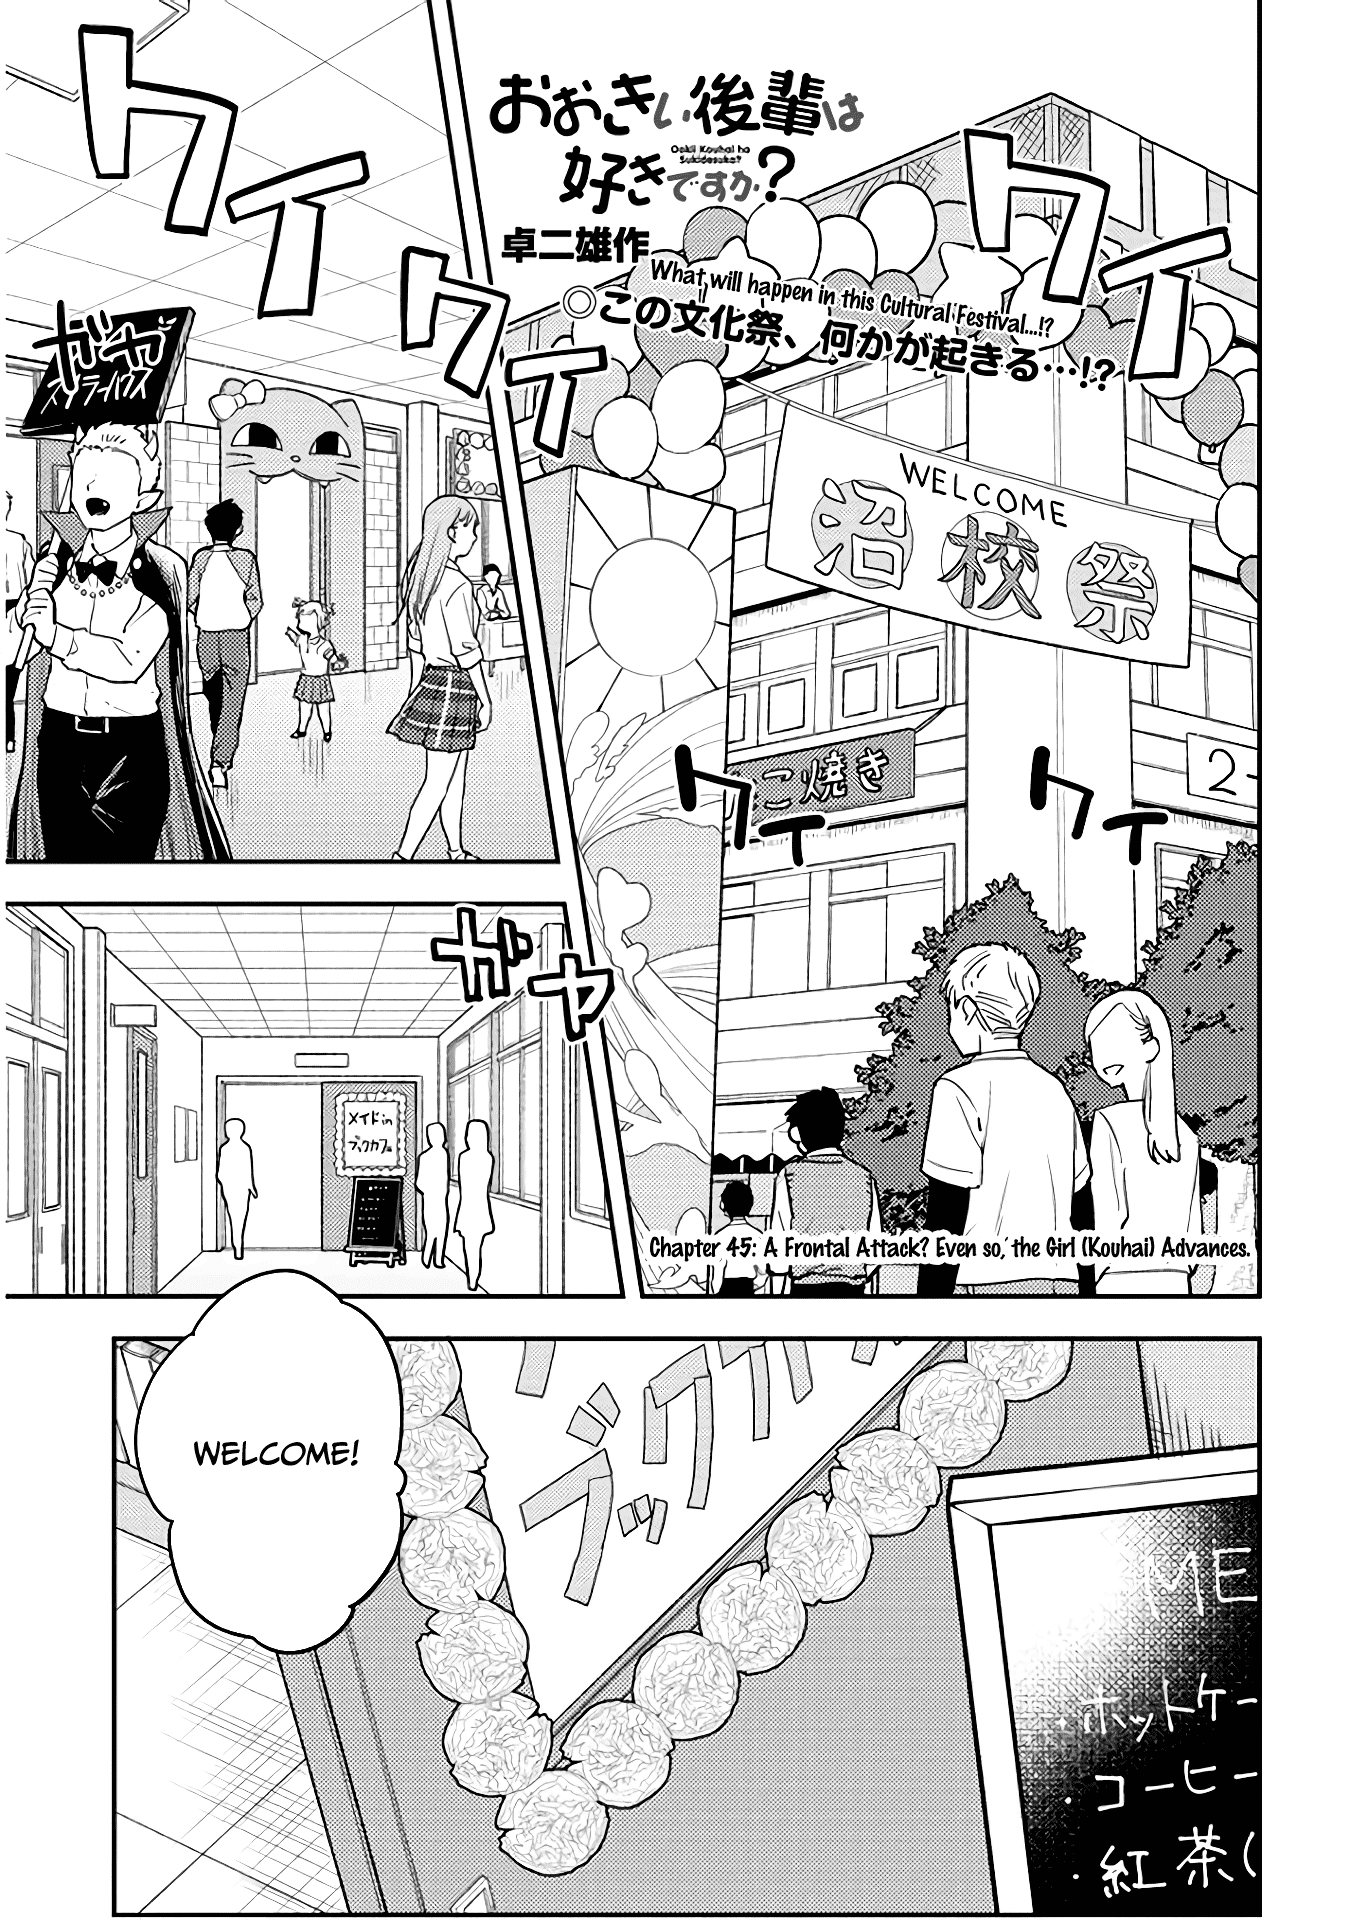 Ookii Kouhai wa Suki desu ka? - Chapter 45 Page 1